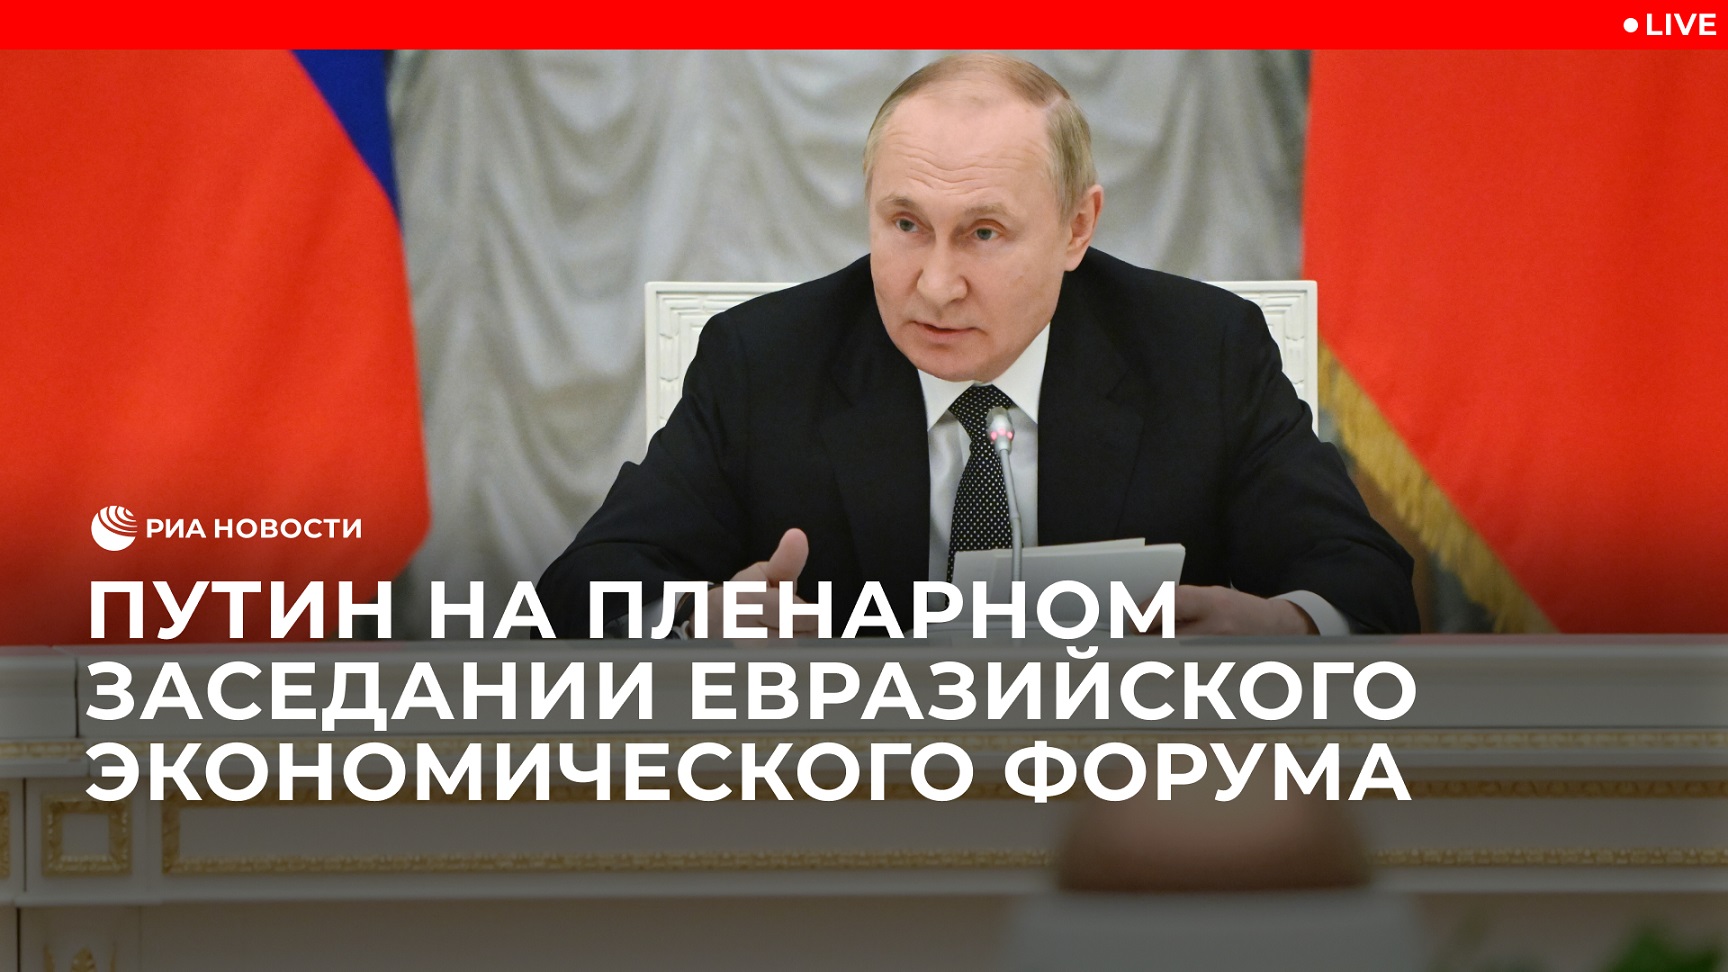 Путин на пленарном заседании Евразийского экономического форума